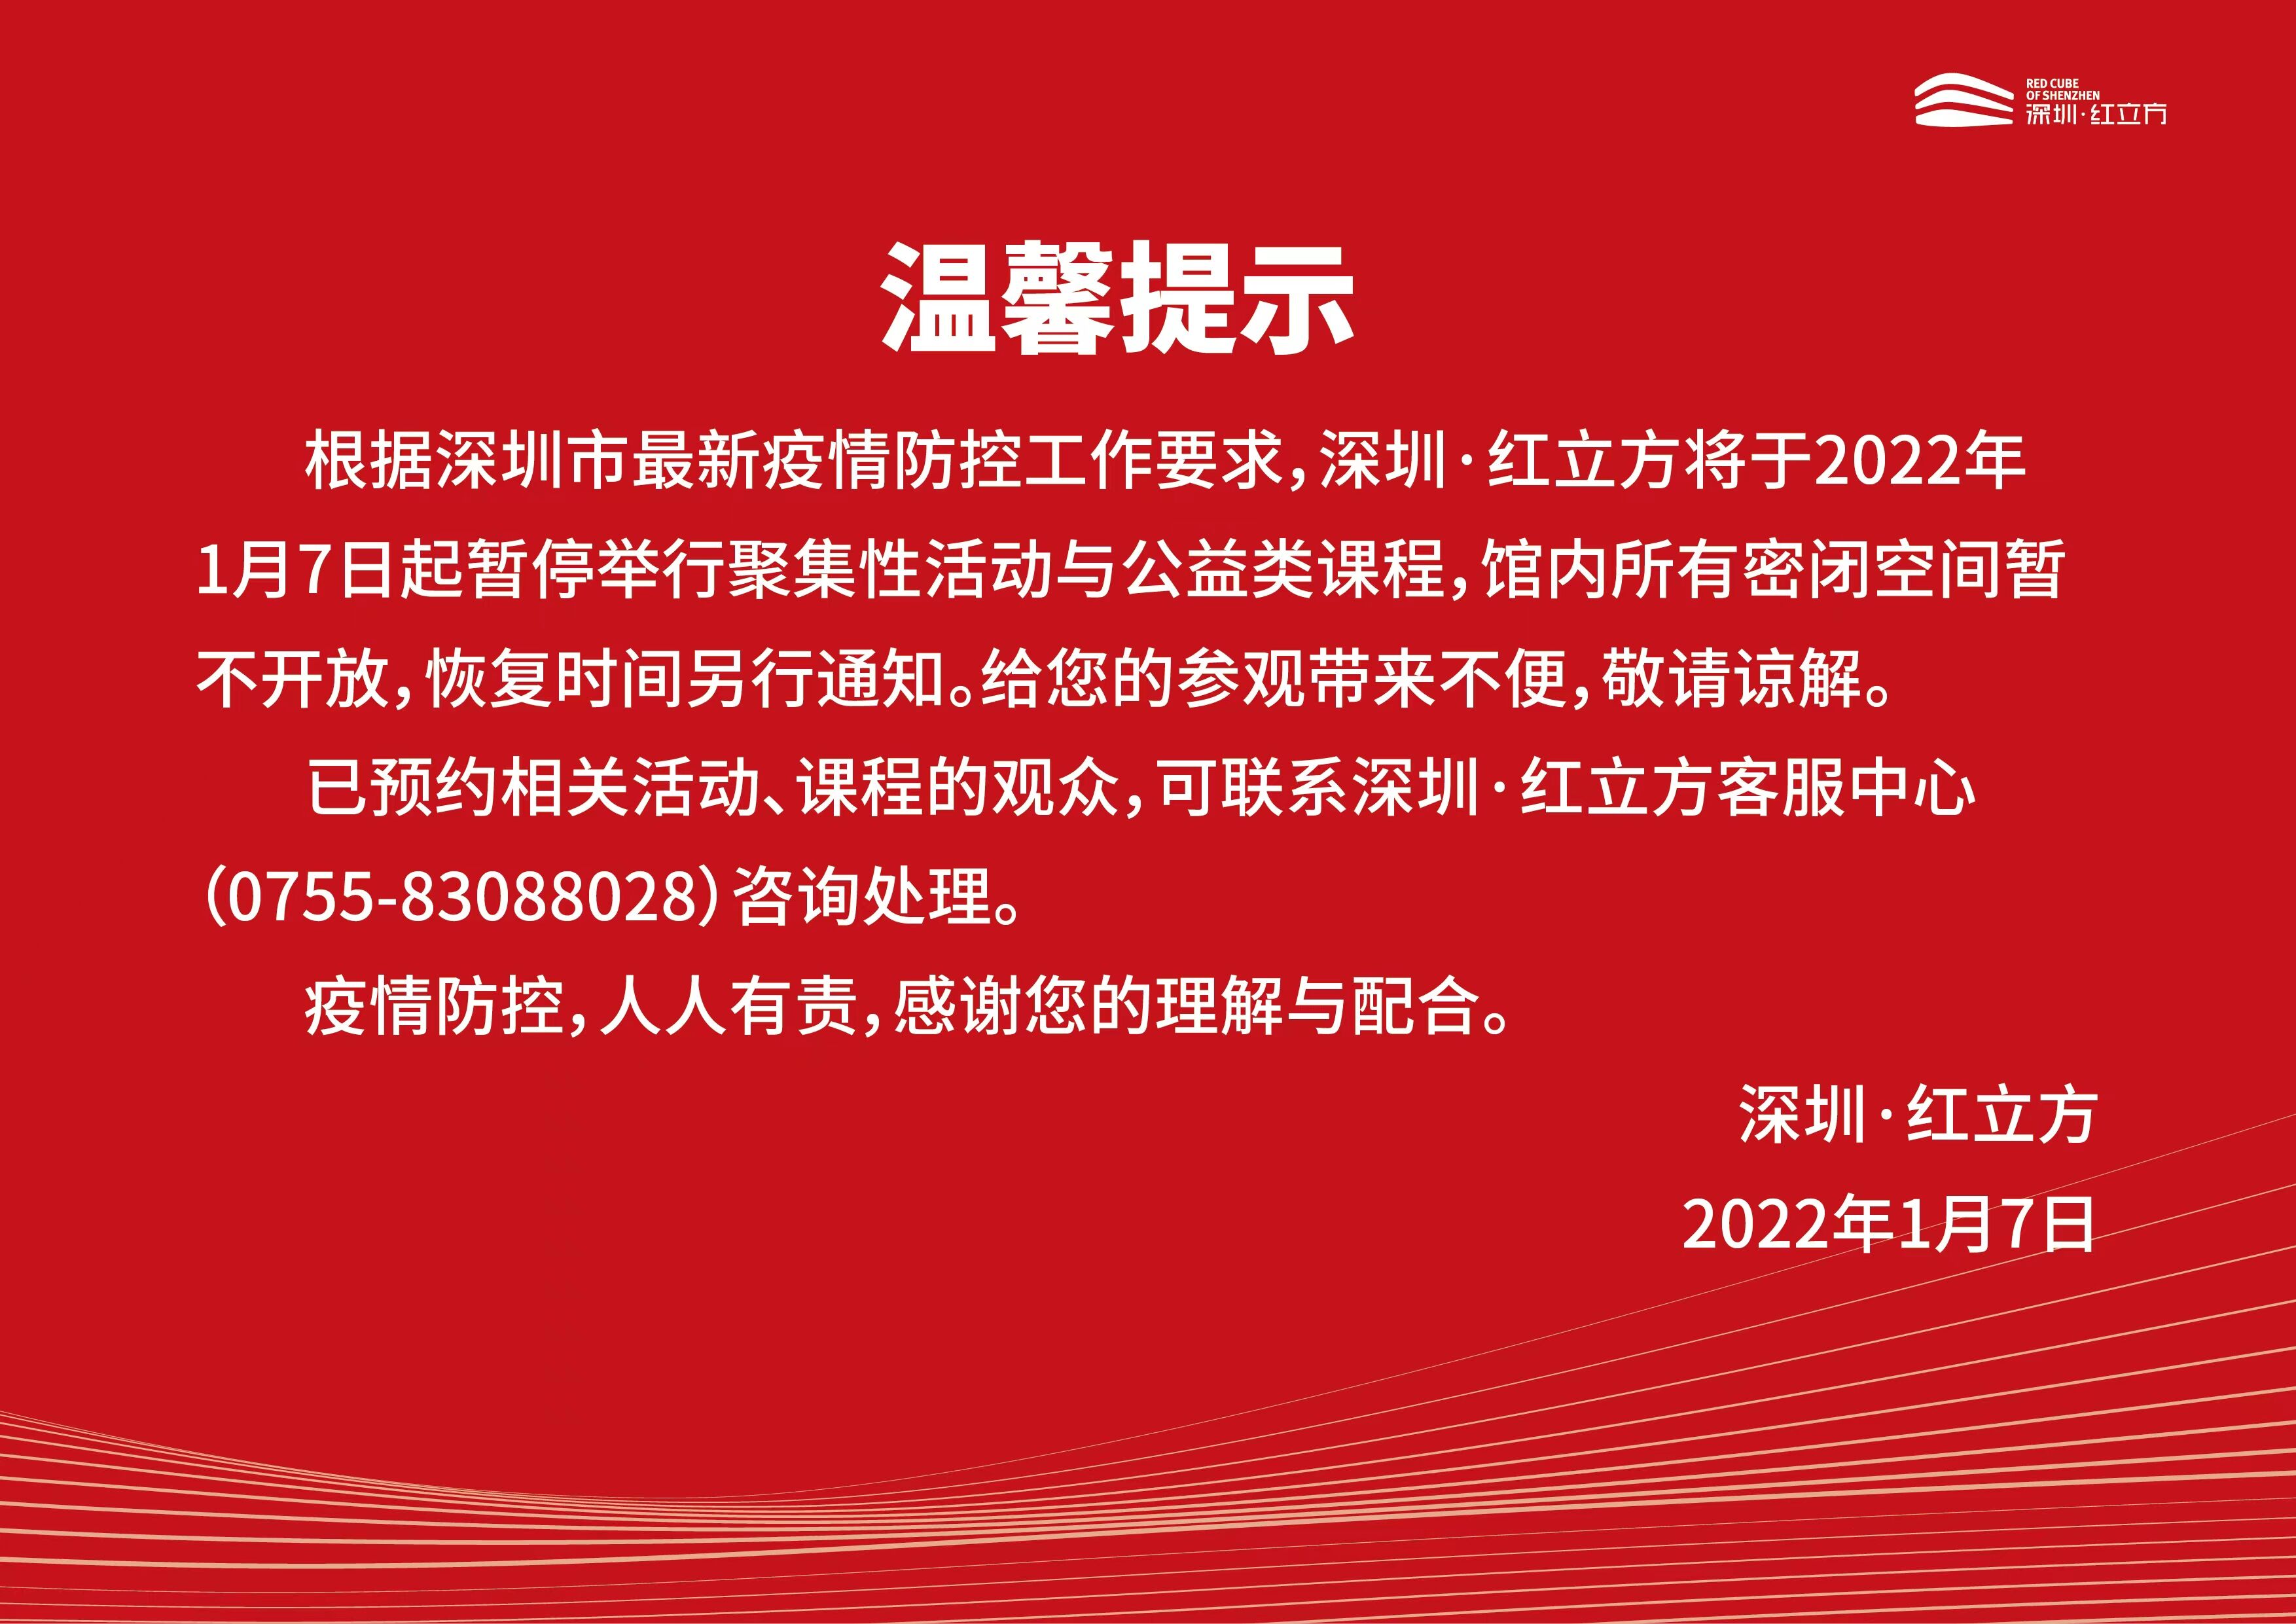 即日起 深圳·红立方公益类课程暂停 馆内密闭空间暂不开放